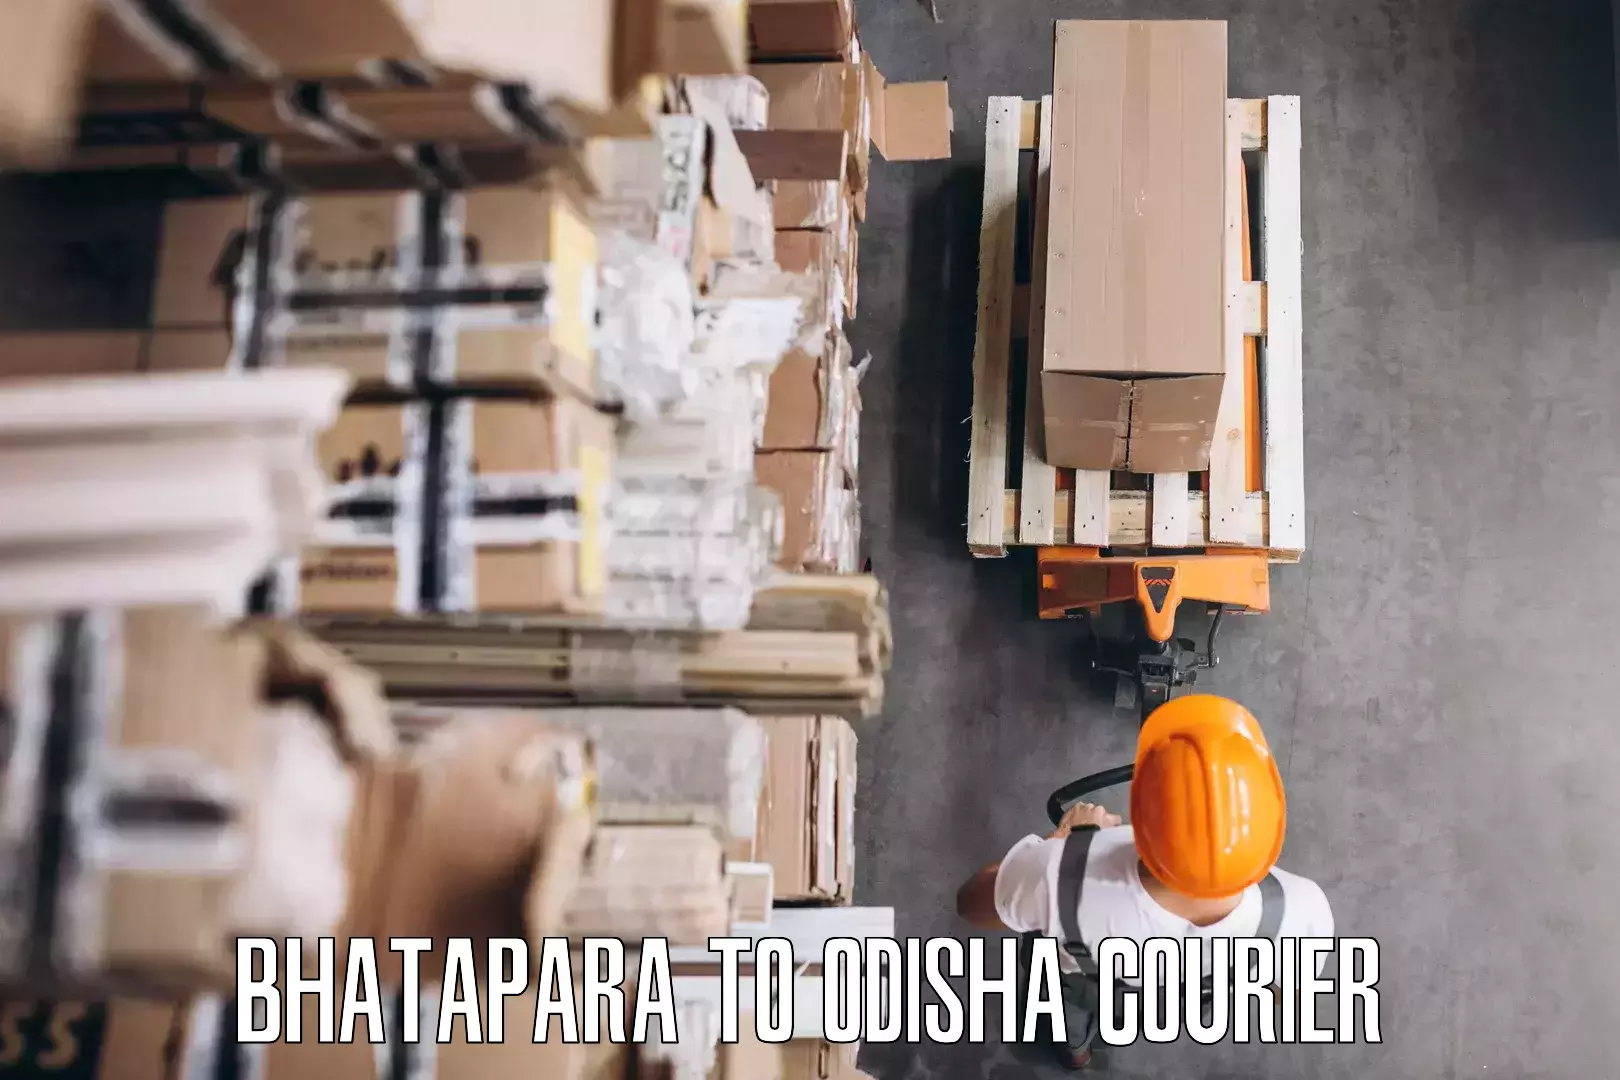 Household goods transport service Bhatapara to Mohana